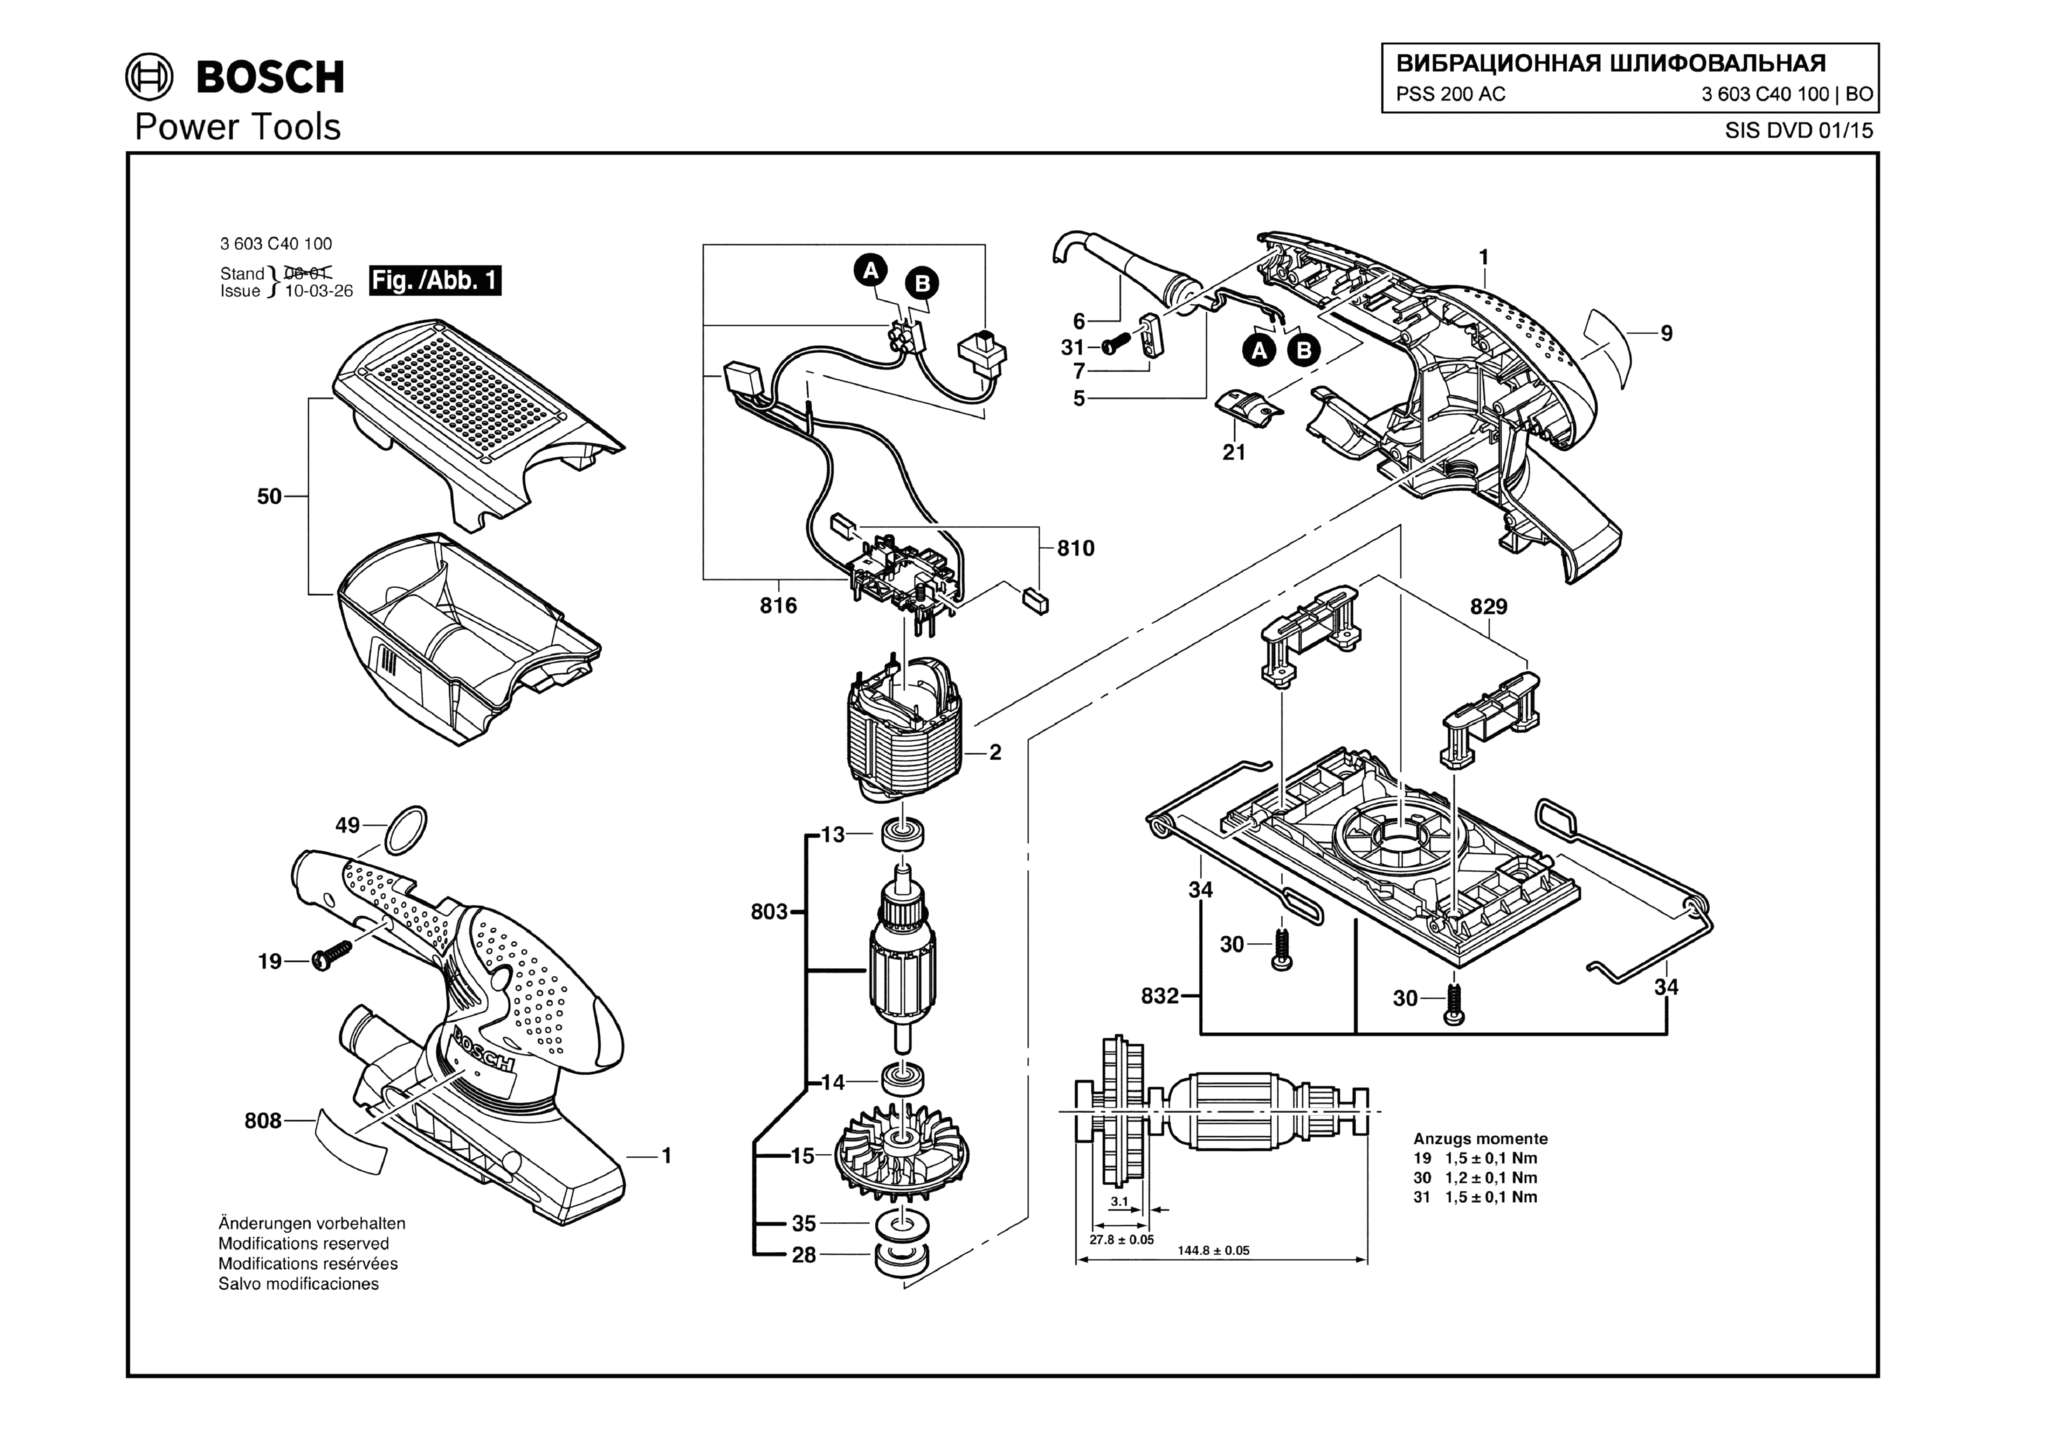 Запчасти, схема и деталировка Bosch PSS 200 AC (ТИП 3603C40100)